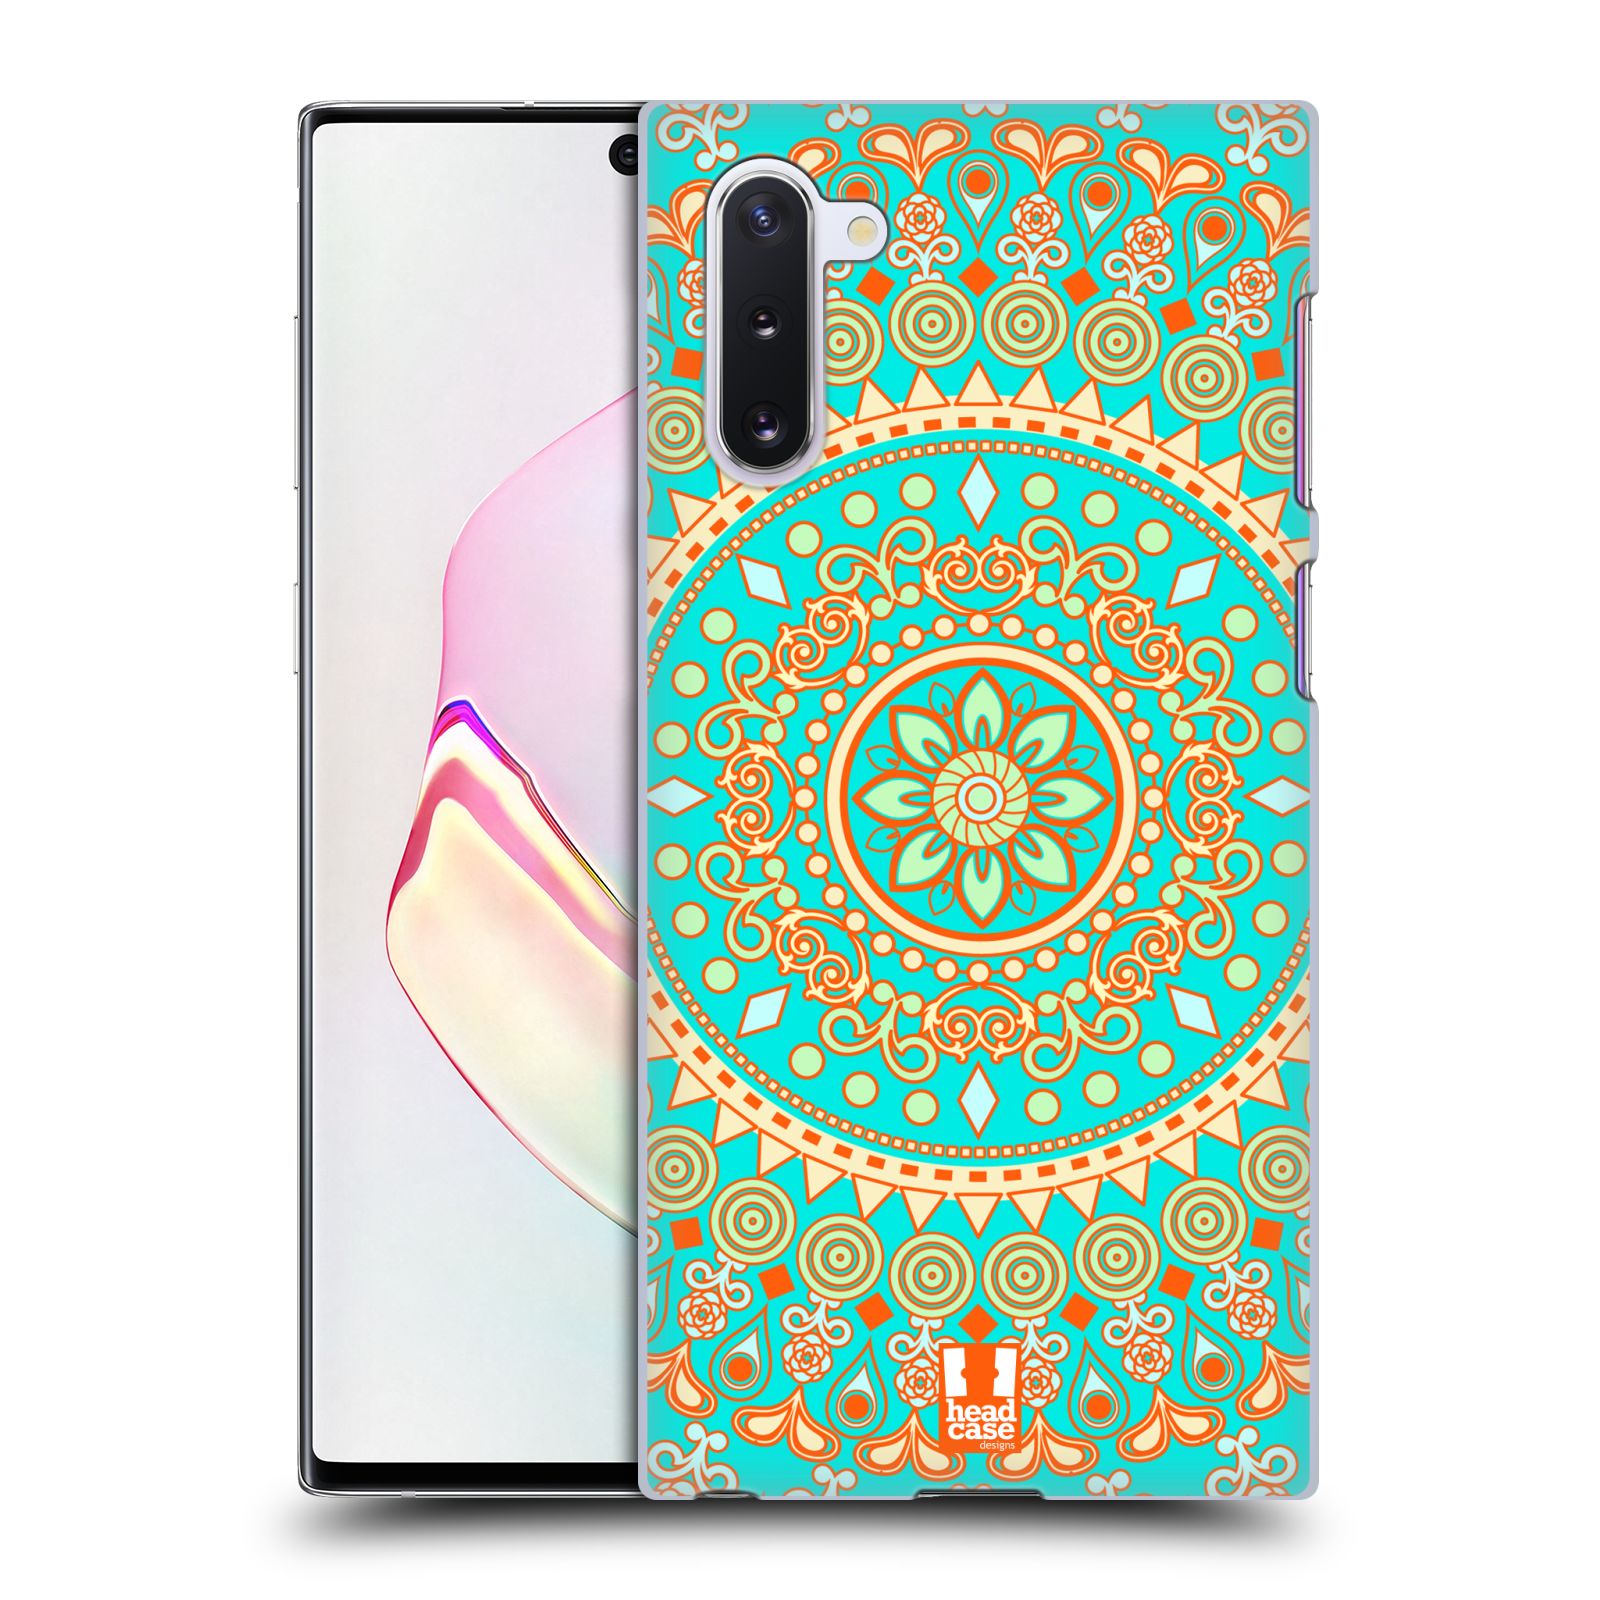 Pouzdro na mobil Samsung Galaxy Note 10 - HEAD CASE - vzor Indie Mandala slunce barevný motiv TYRKYSOVÁ, ZELENÁ